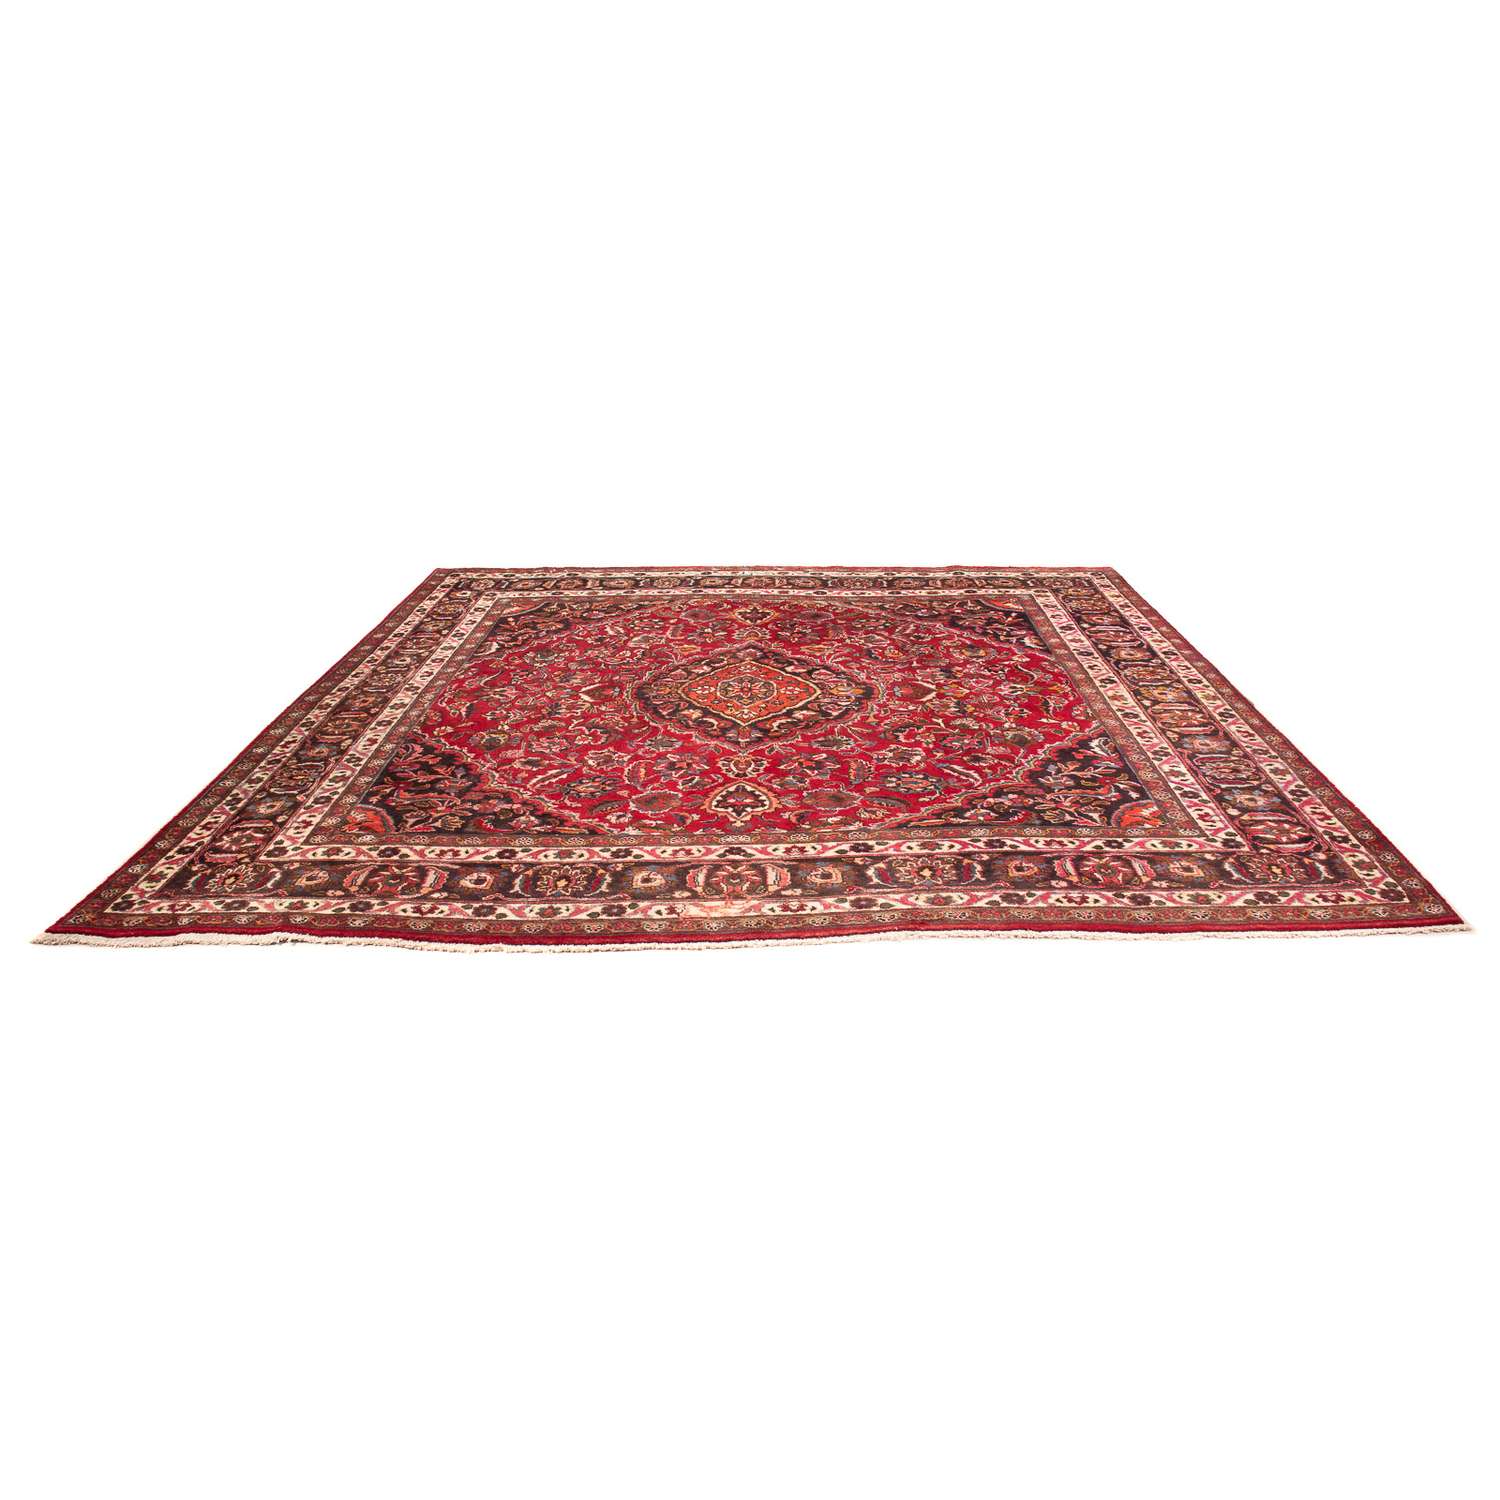 Persisk tæppe - Classic firkantet  - 320 x 300 cm - mørkerød